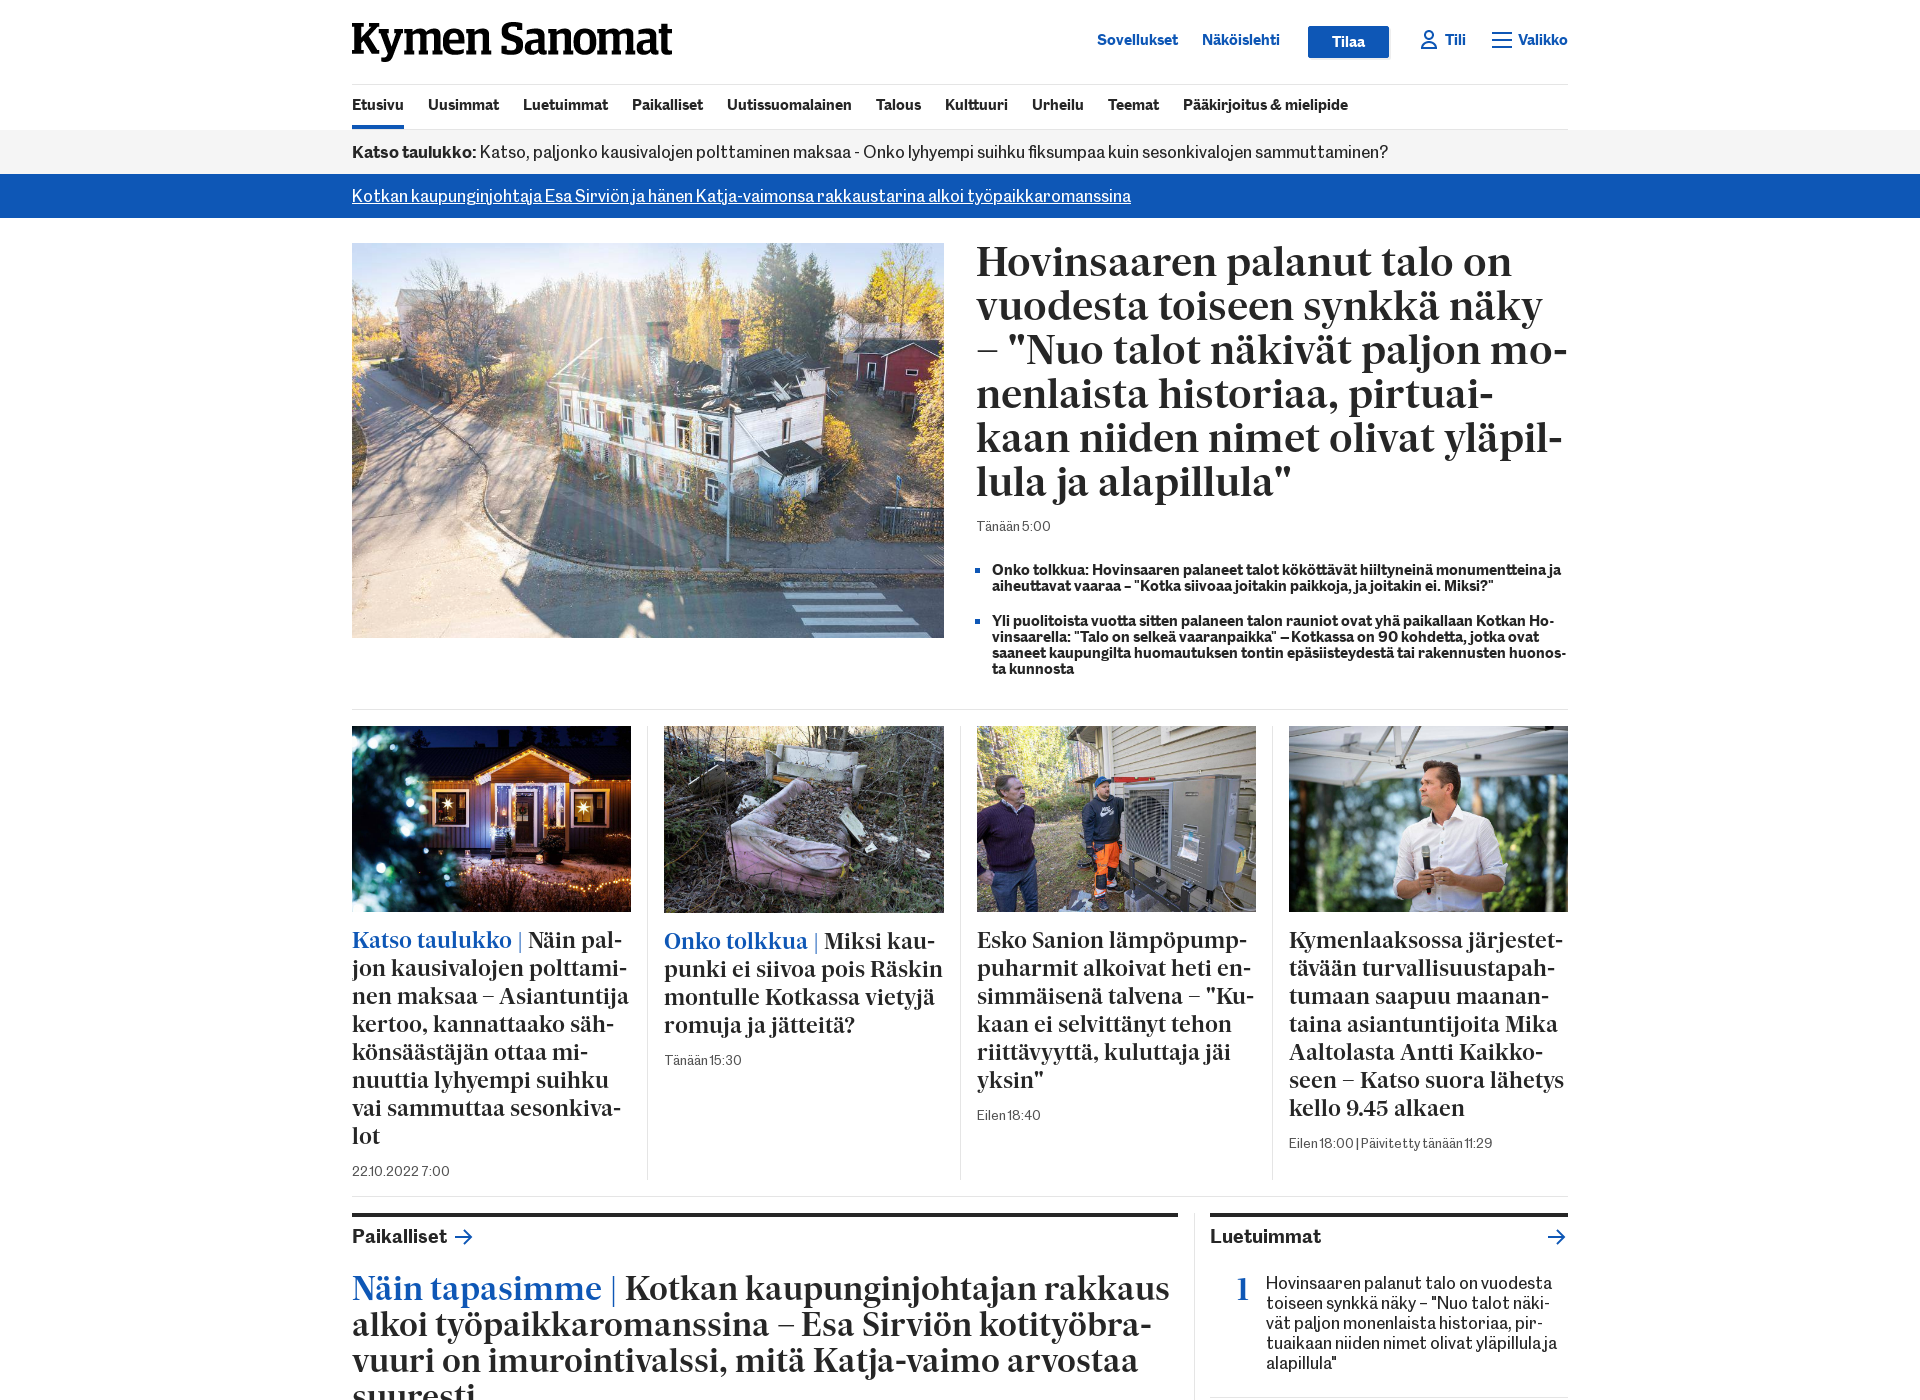 Näyttökuva kymensanomat.fi